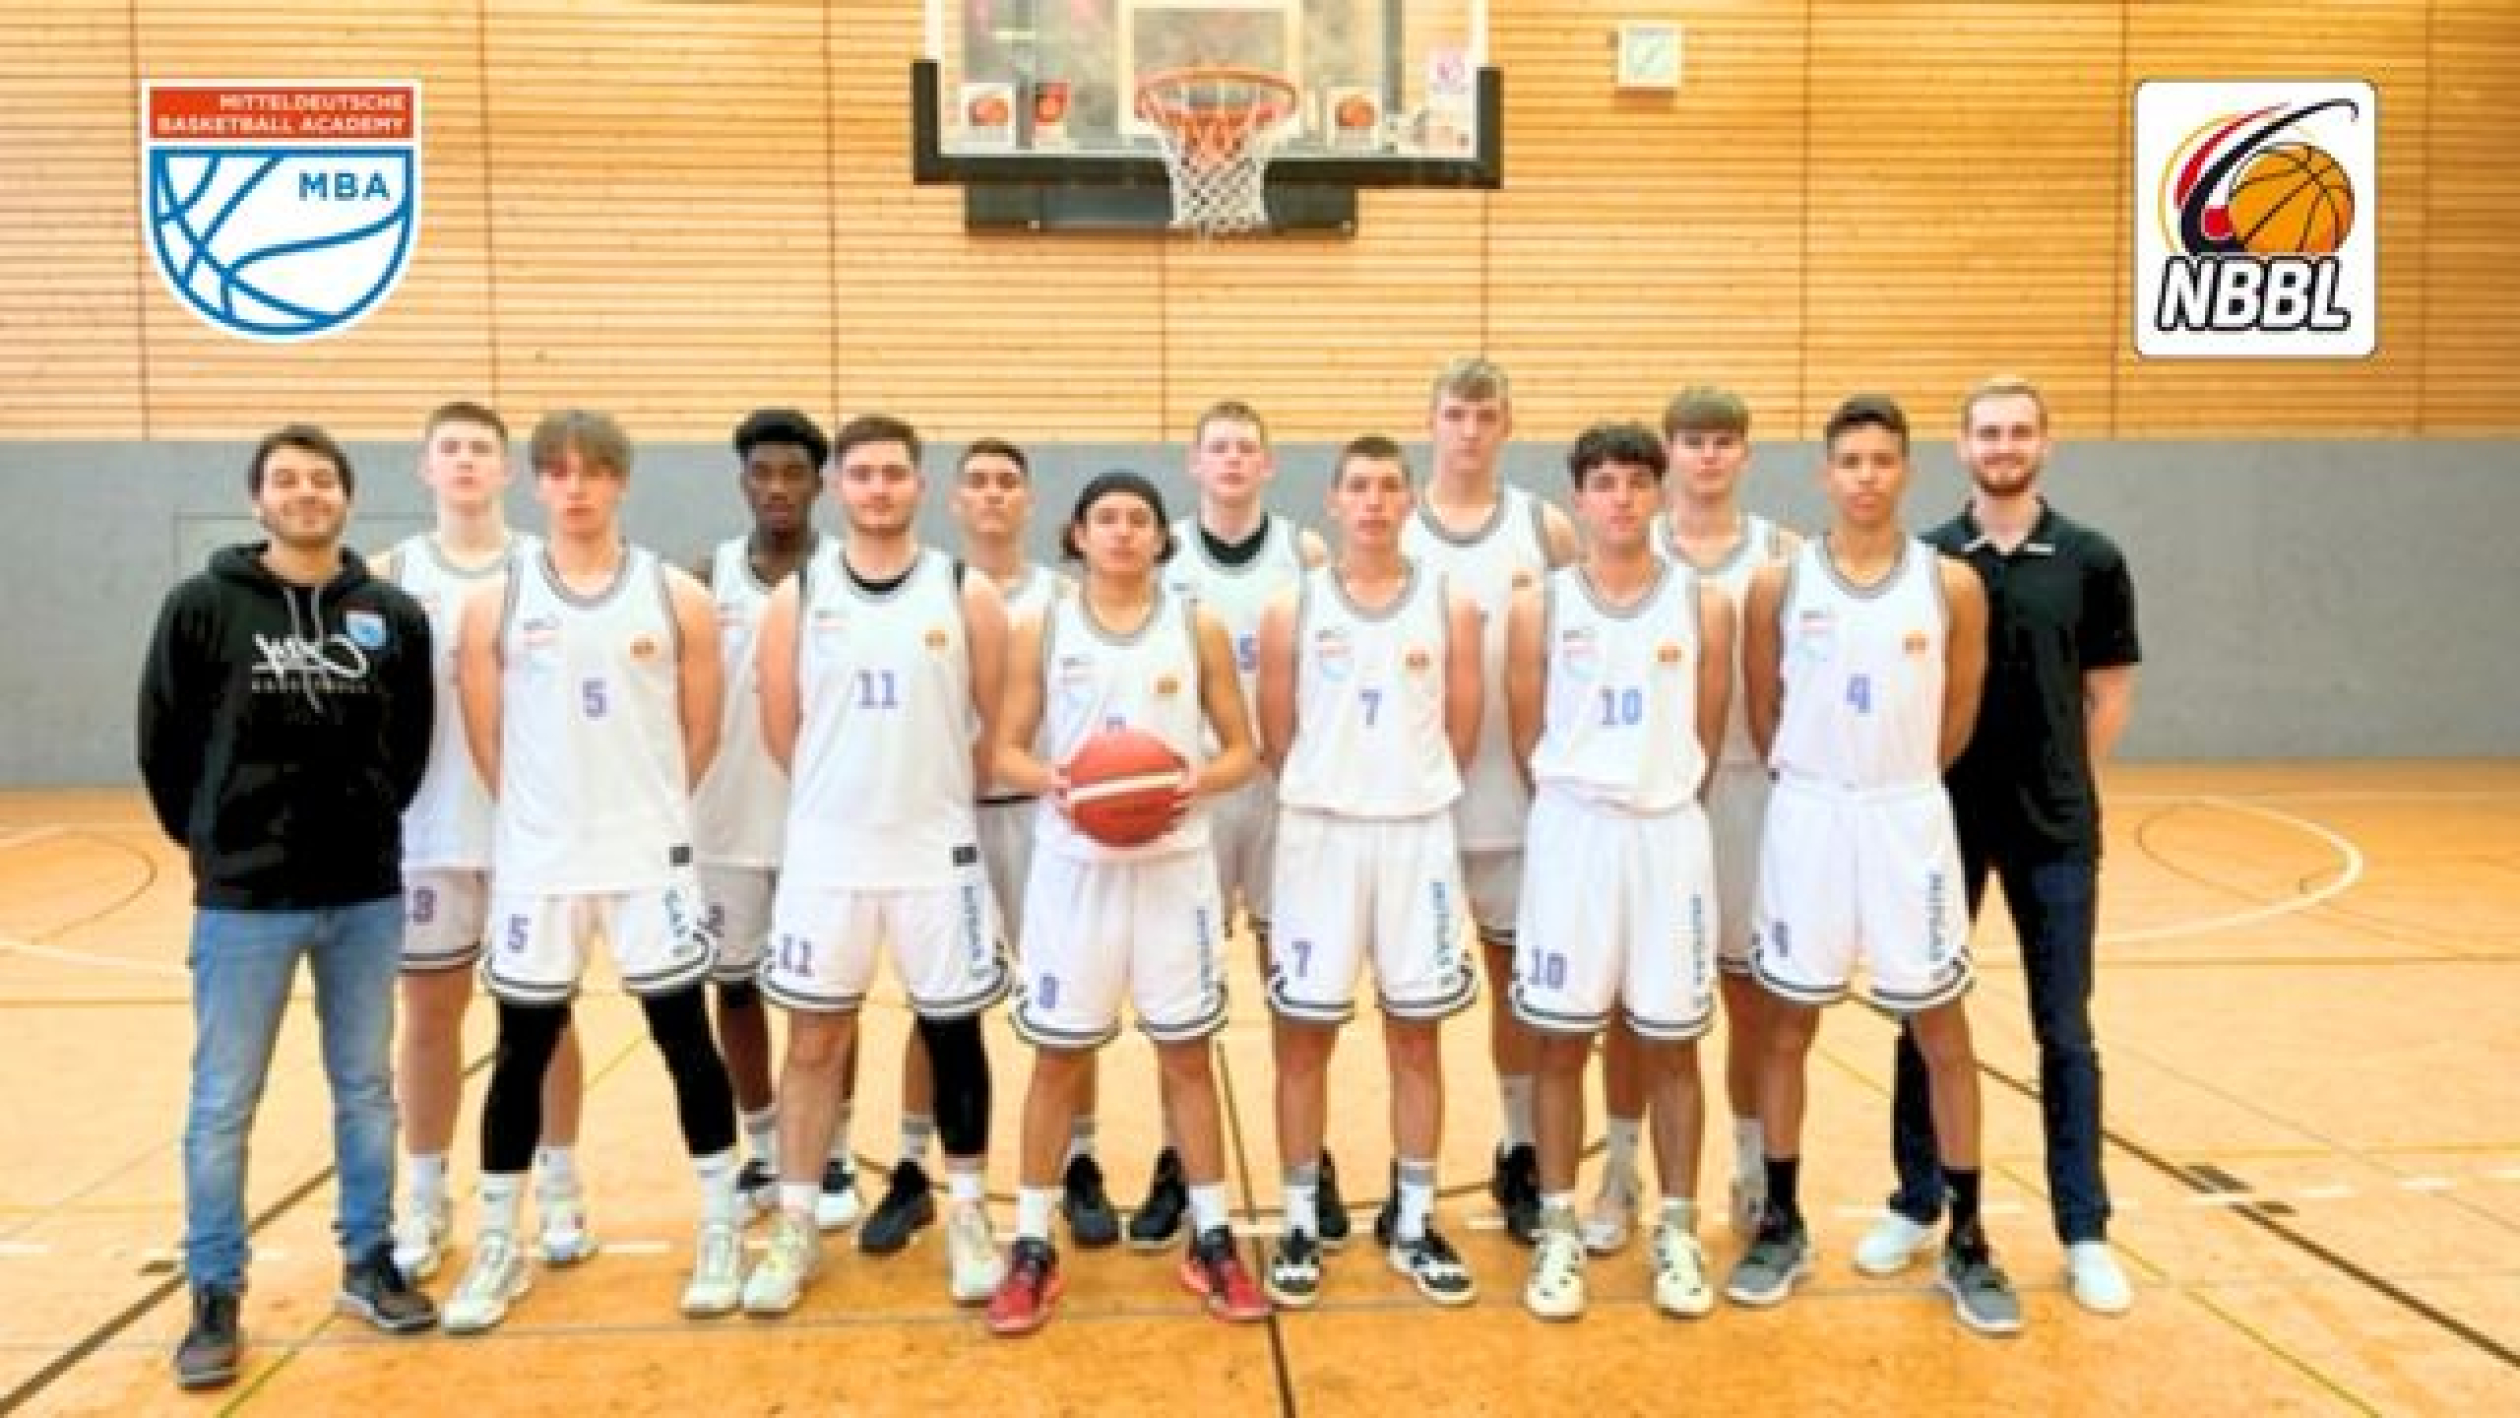 Mannschaftsfoto Mitteldeutsche Basketball Academy